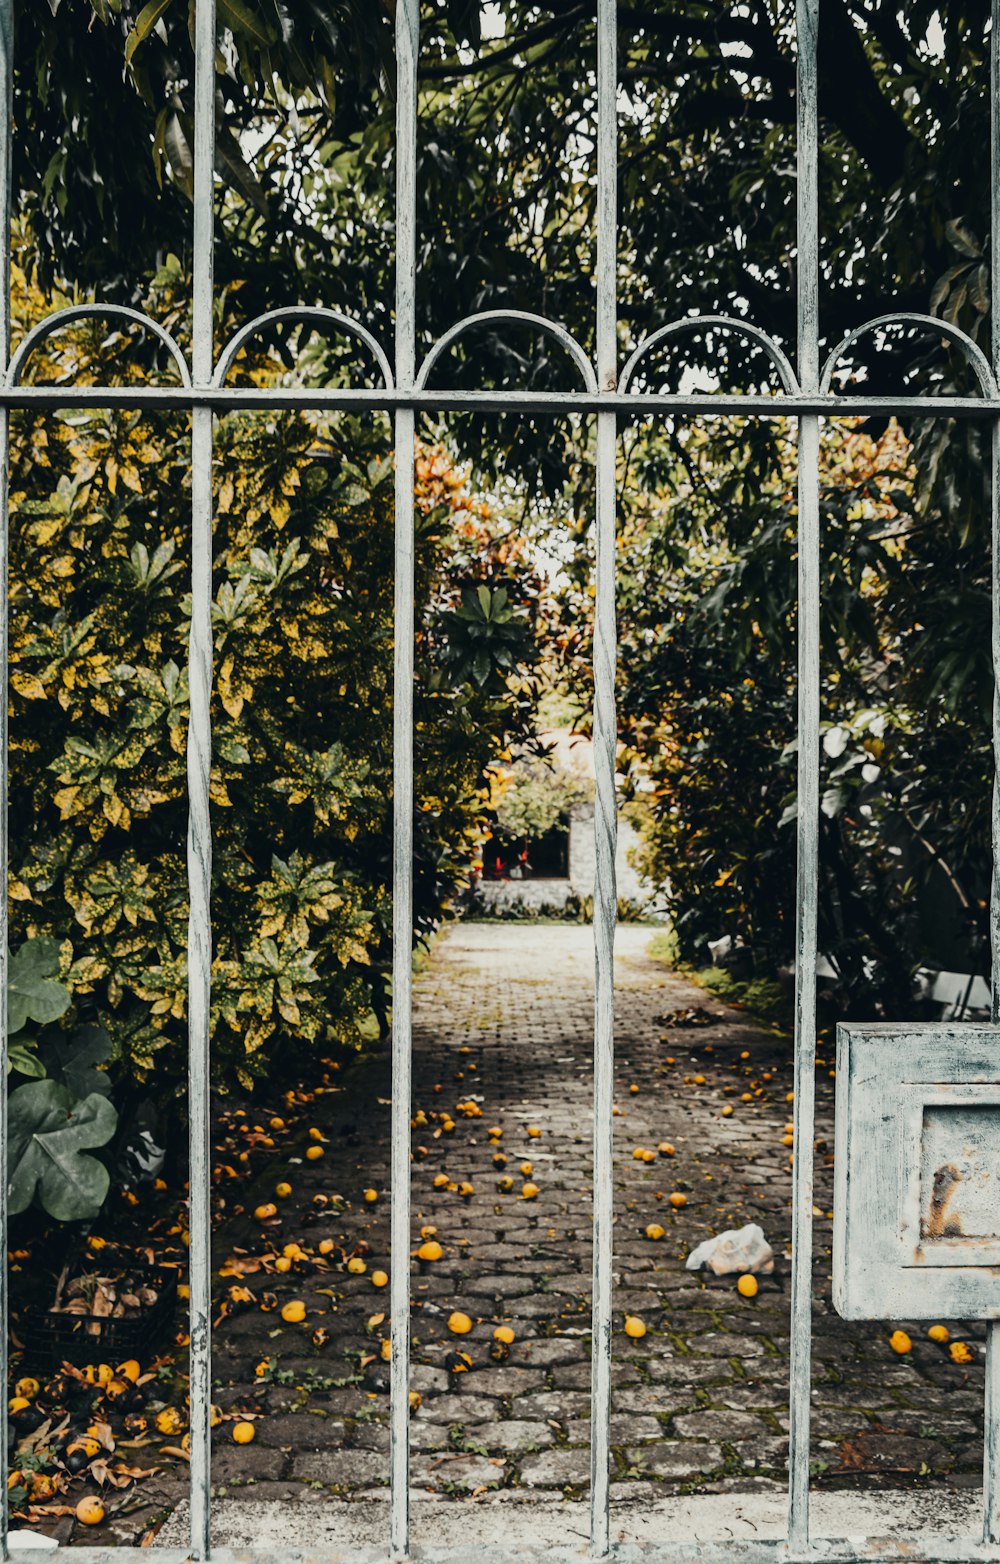 foglie gialle e verdi su recinzione metallica bianca